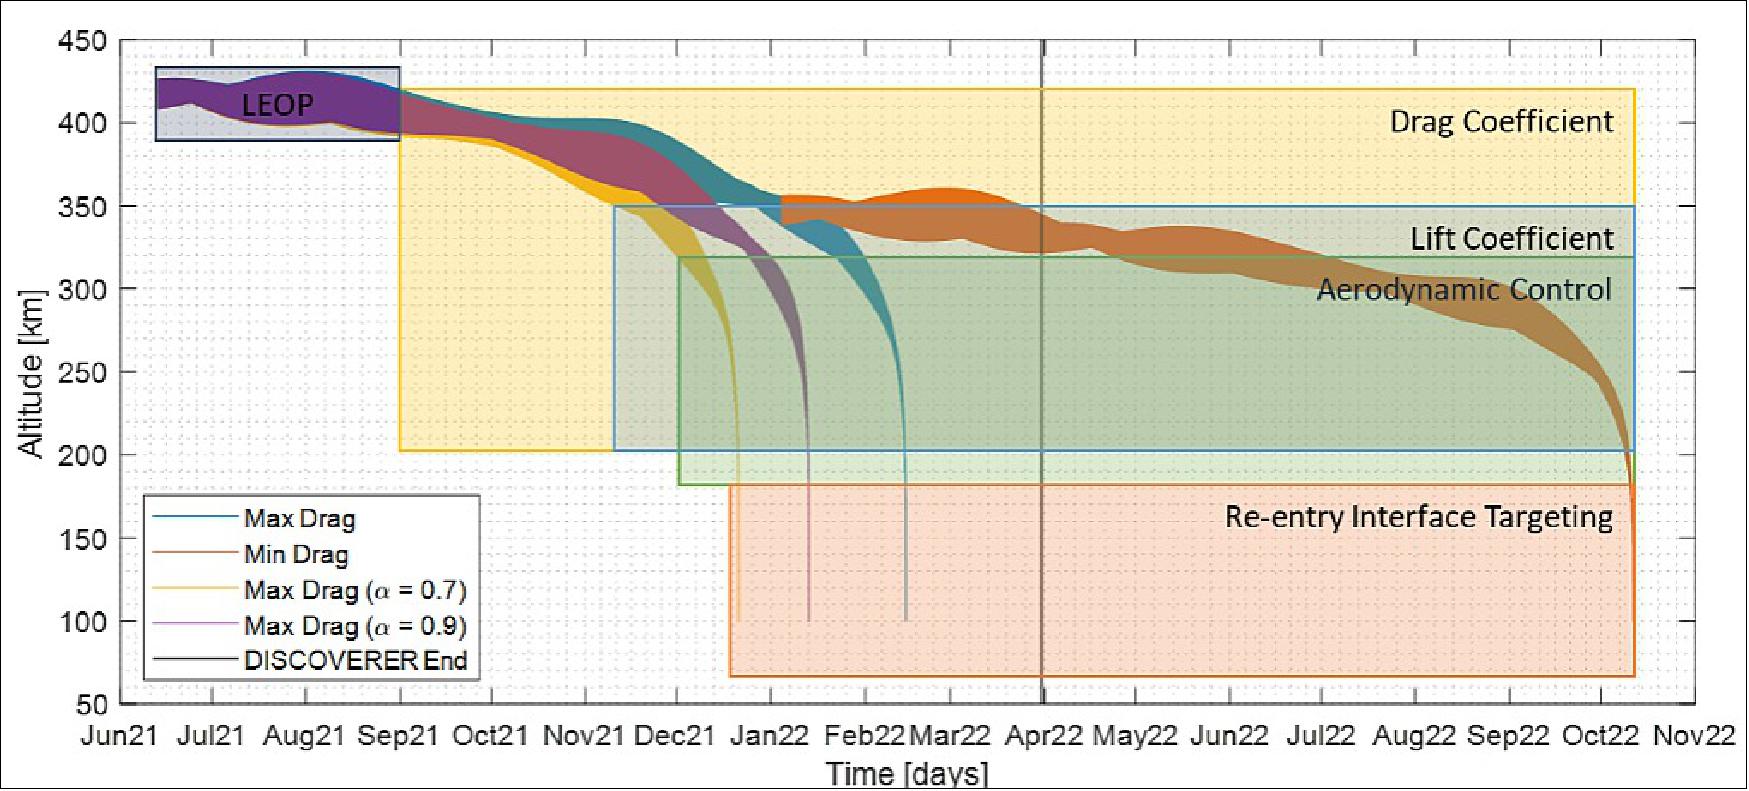 Figure 5: Summary mission timeline for SOAR (image credit: SOAR collaboration)